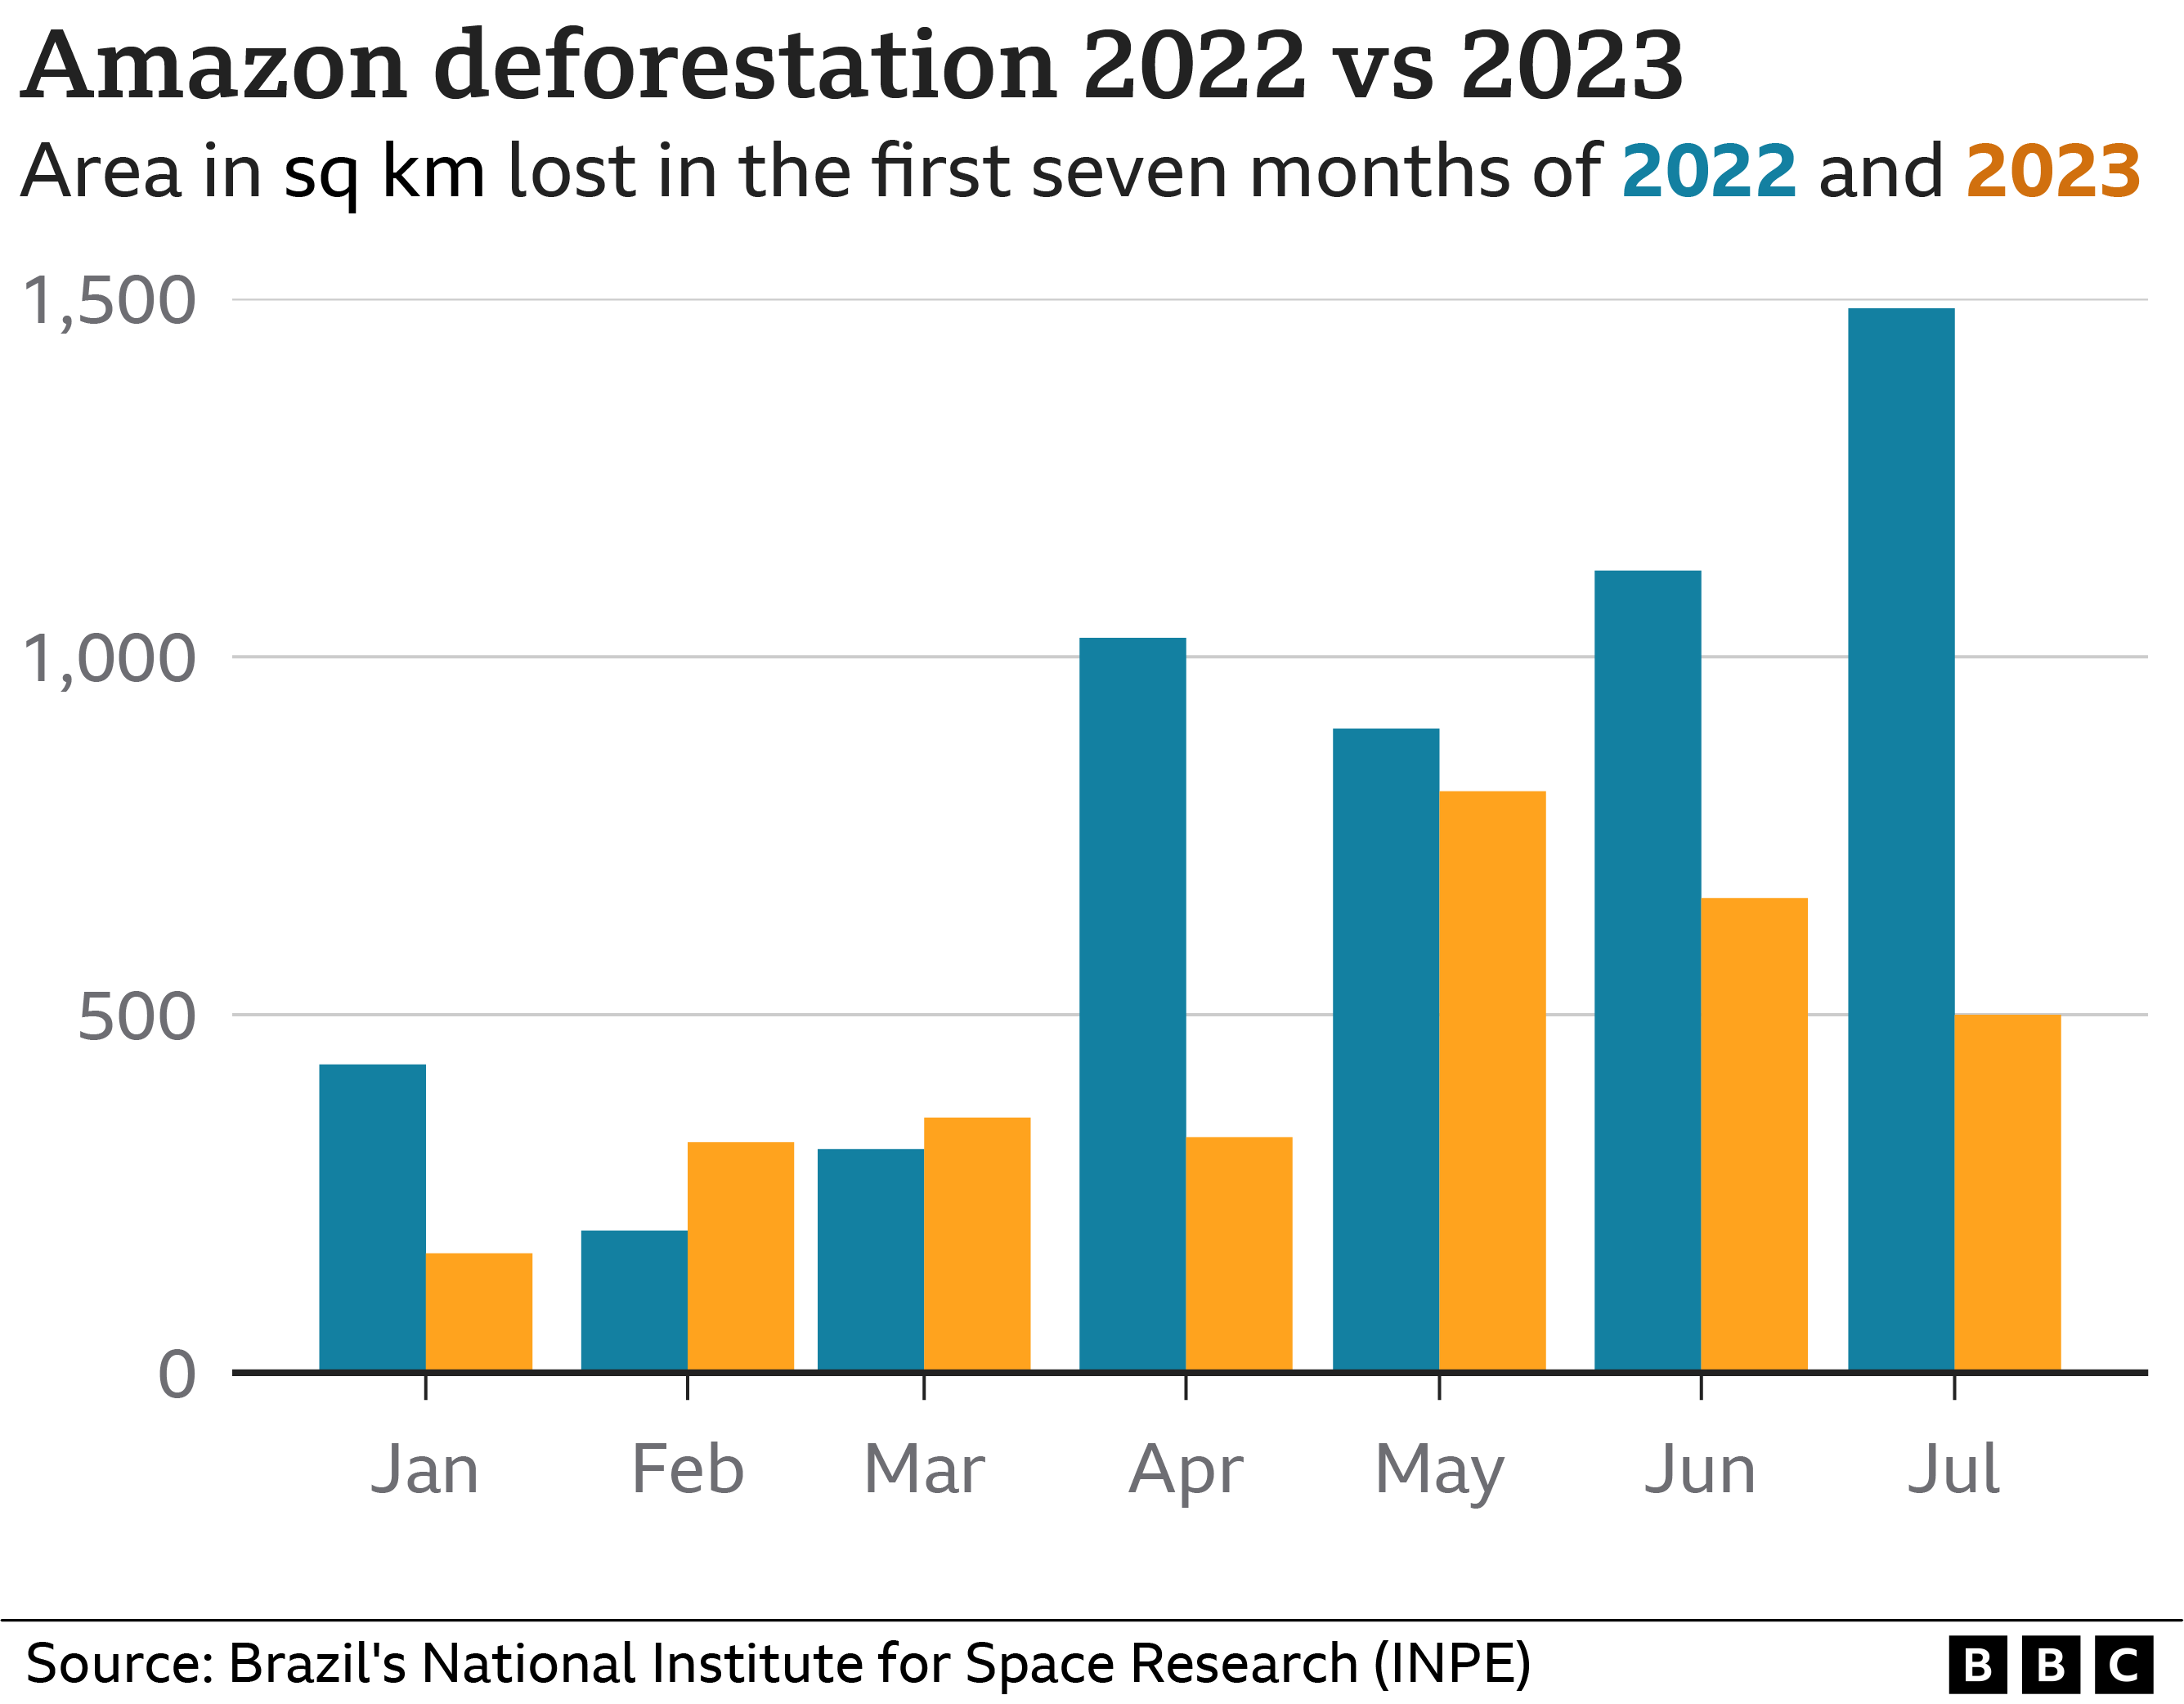 Gráfico de barras que muestra tasas de deforestación más bajas en 2023 en comparación con 2022 en la mayoría de los meses de enero a julio